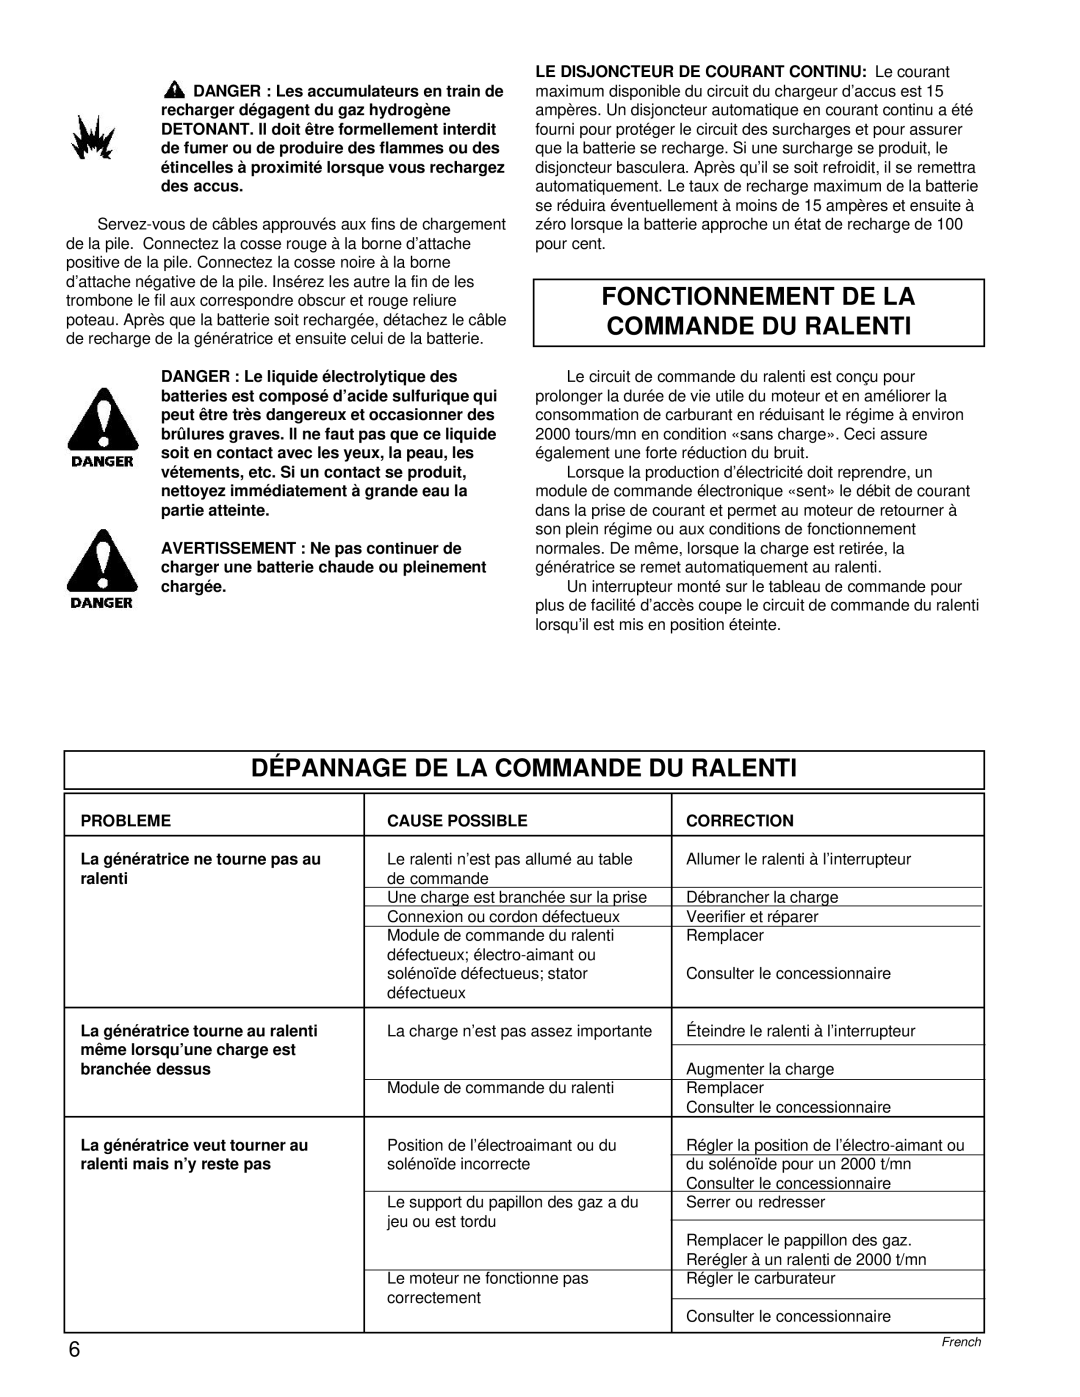 Powermate PC0496503.17 manual Fonctionnement De La Commande Du Ralenti, Dépannage De La Commande Du Ralenti 